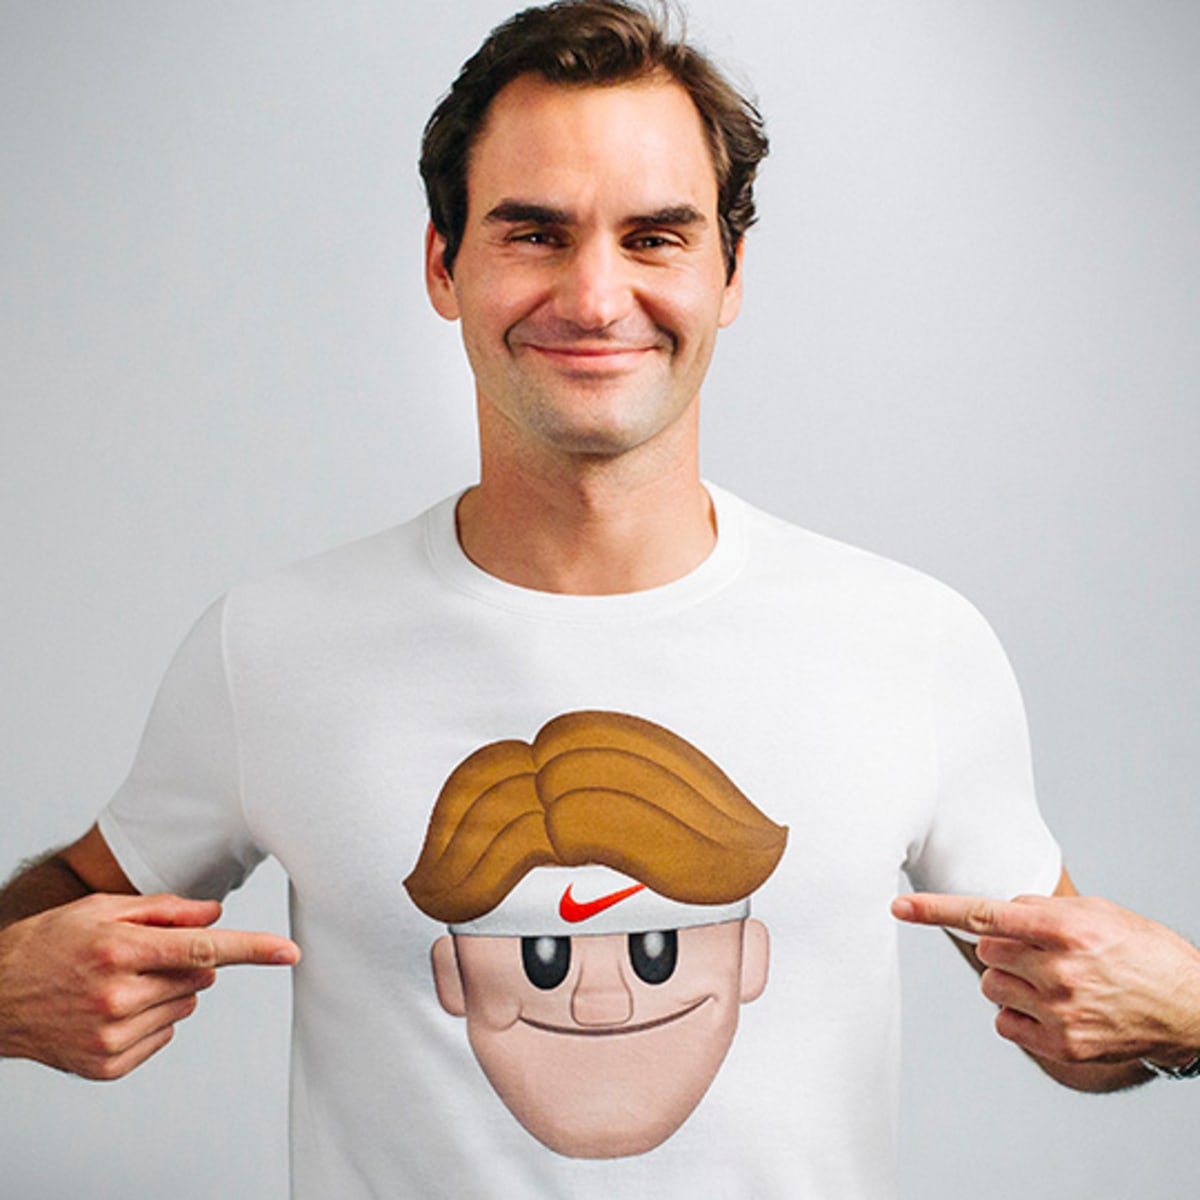 Details on Roger Federer emoji shirts by Nike, artist Michael Lau